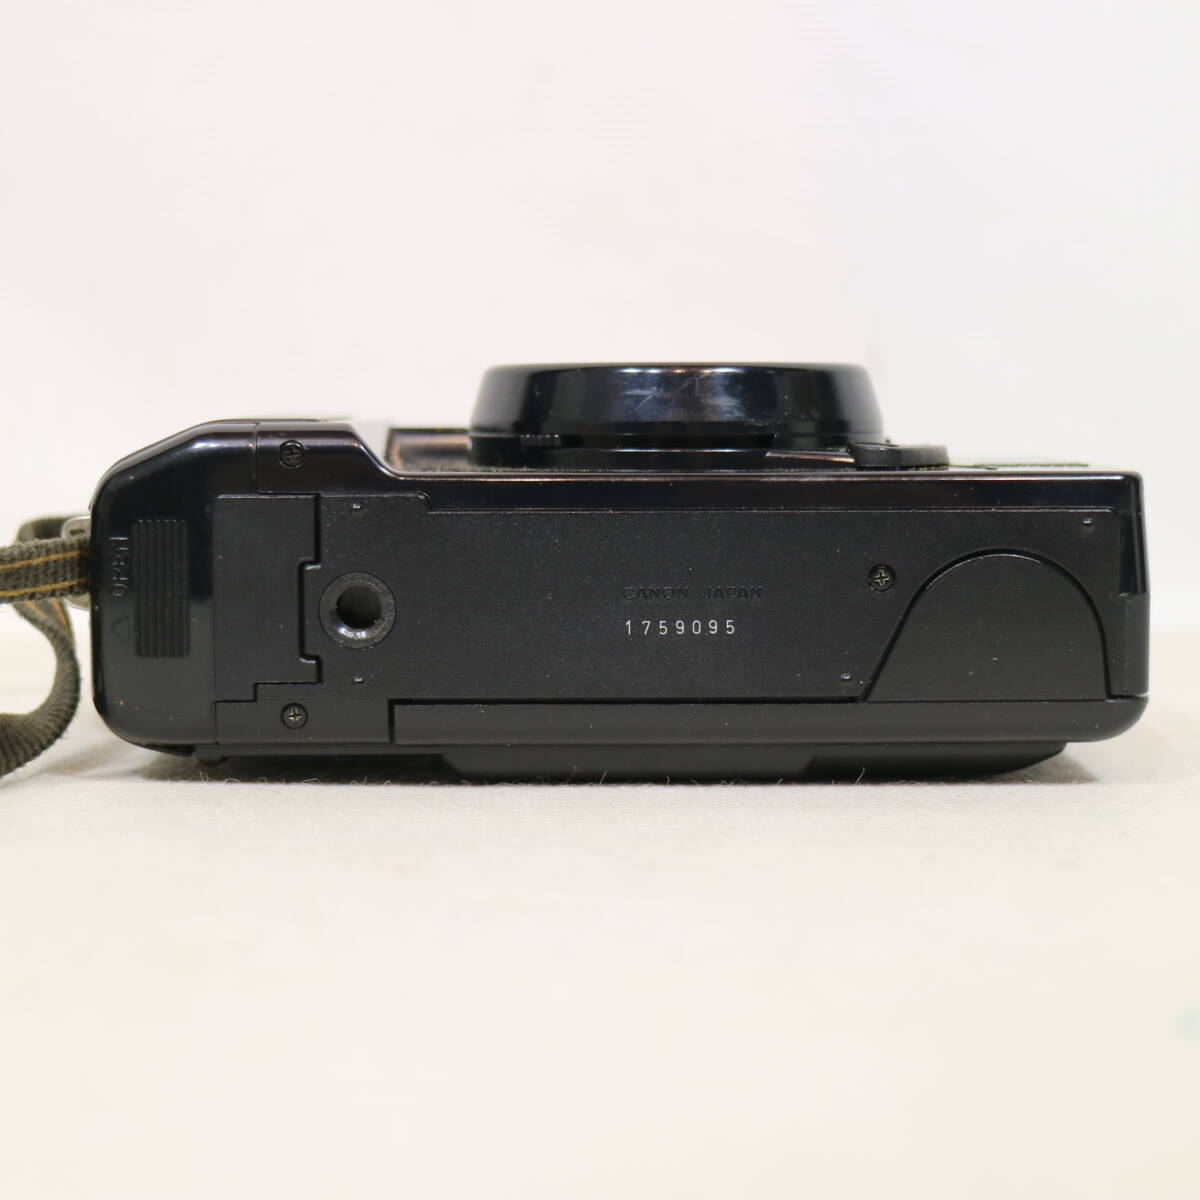 CANON キャノン Autoboy2 QUARTZ DATE オートボーイ クォーツデート 35mmカメラ フィルムカメラ 38mmレンズ ケース付 1759095 現状品の画像7